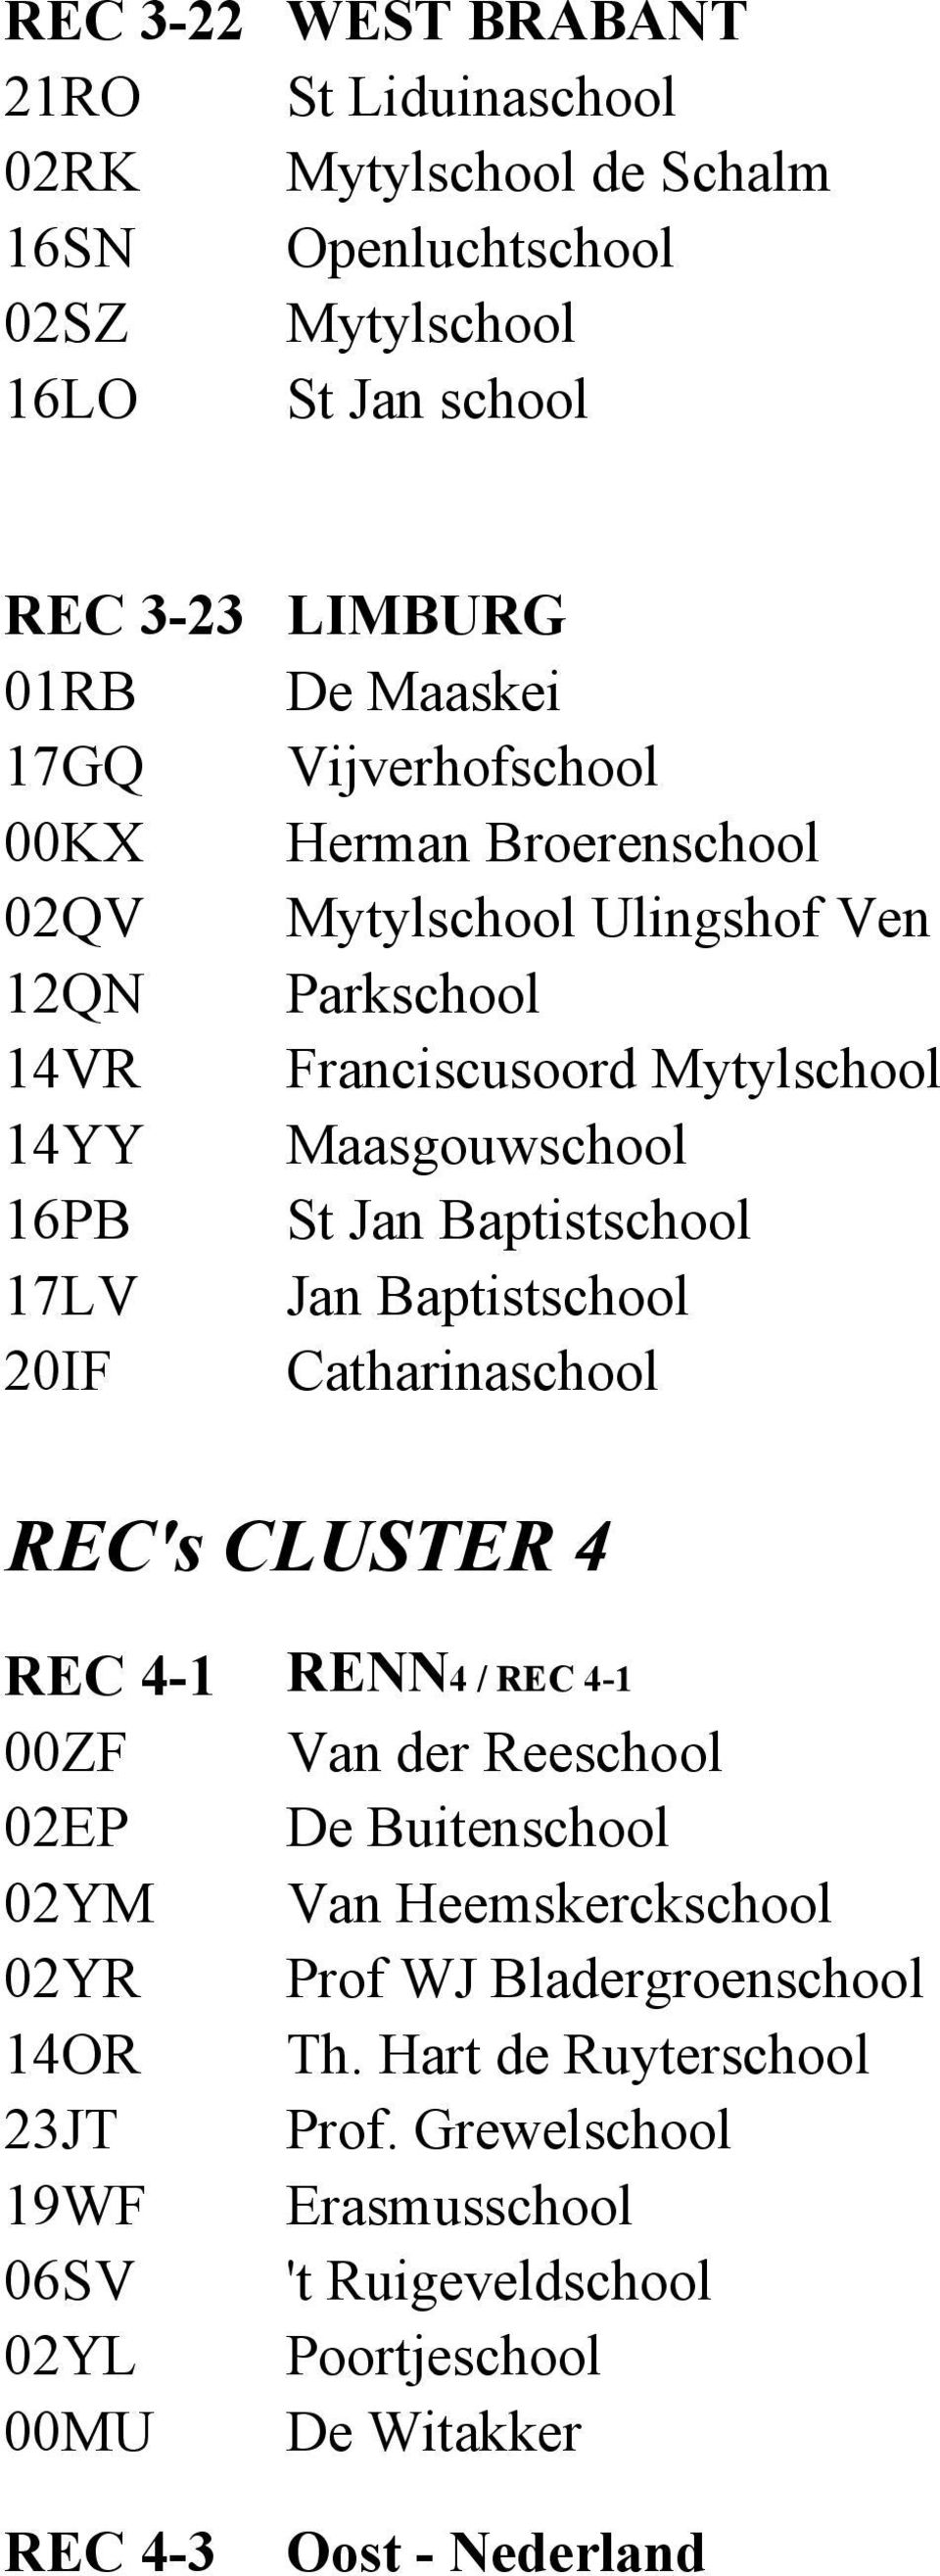 17LV Jan Baptistschool 20IF Catharinaschool REC's CLUSTER 4 REC 4-1 RENN4 / REC 4-1 00ZF Van der Reeschool 02EP De Buitenschool 02YM Van Heemskerckschool 02YR Prof WJ